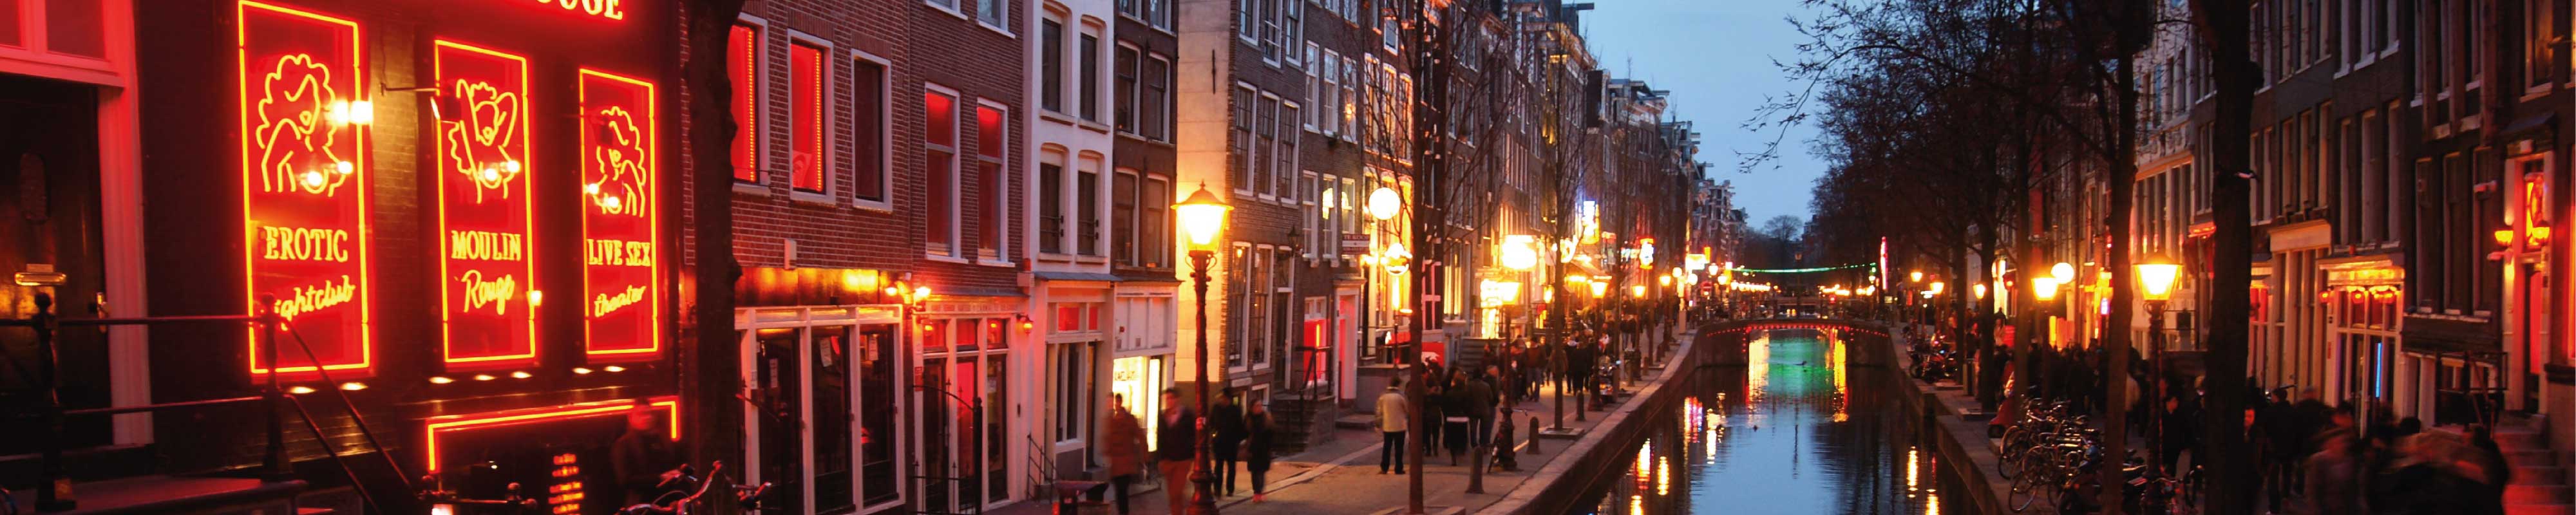 Consigna Equipaje | El Barrio Rojo en Amsterdam - Nannybag